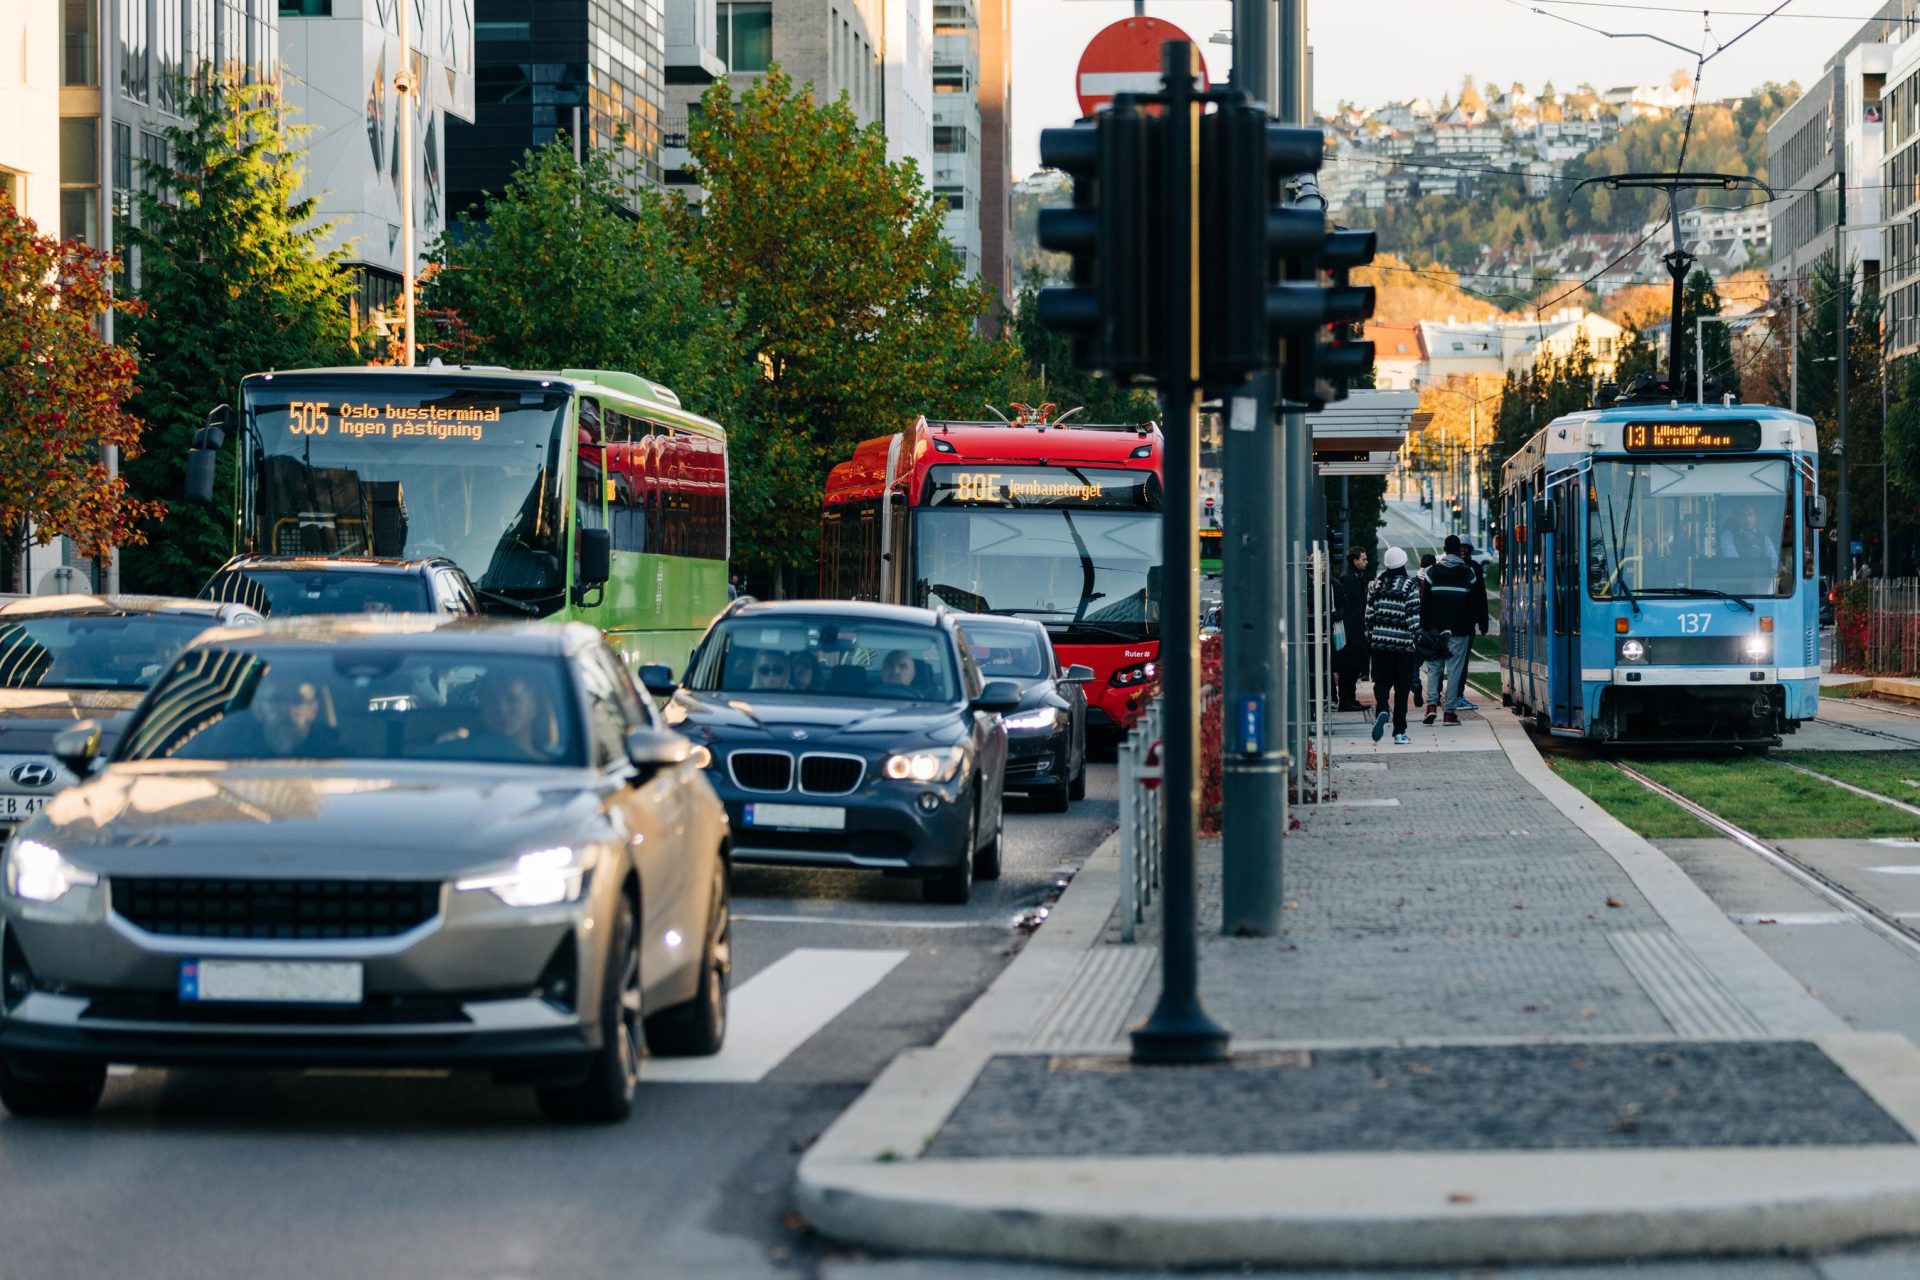 Trafikkscene i en by med biler, busser og en trikk som beveger seg langs en gate, med fotgjengere som venter på å krysse i et lyskryss.